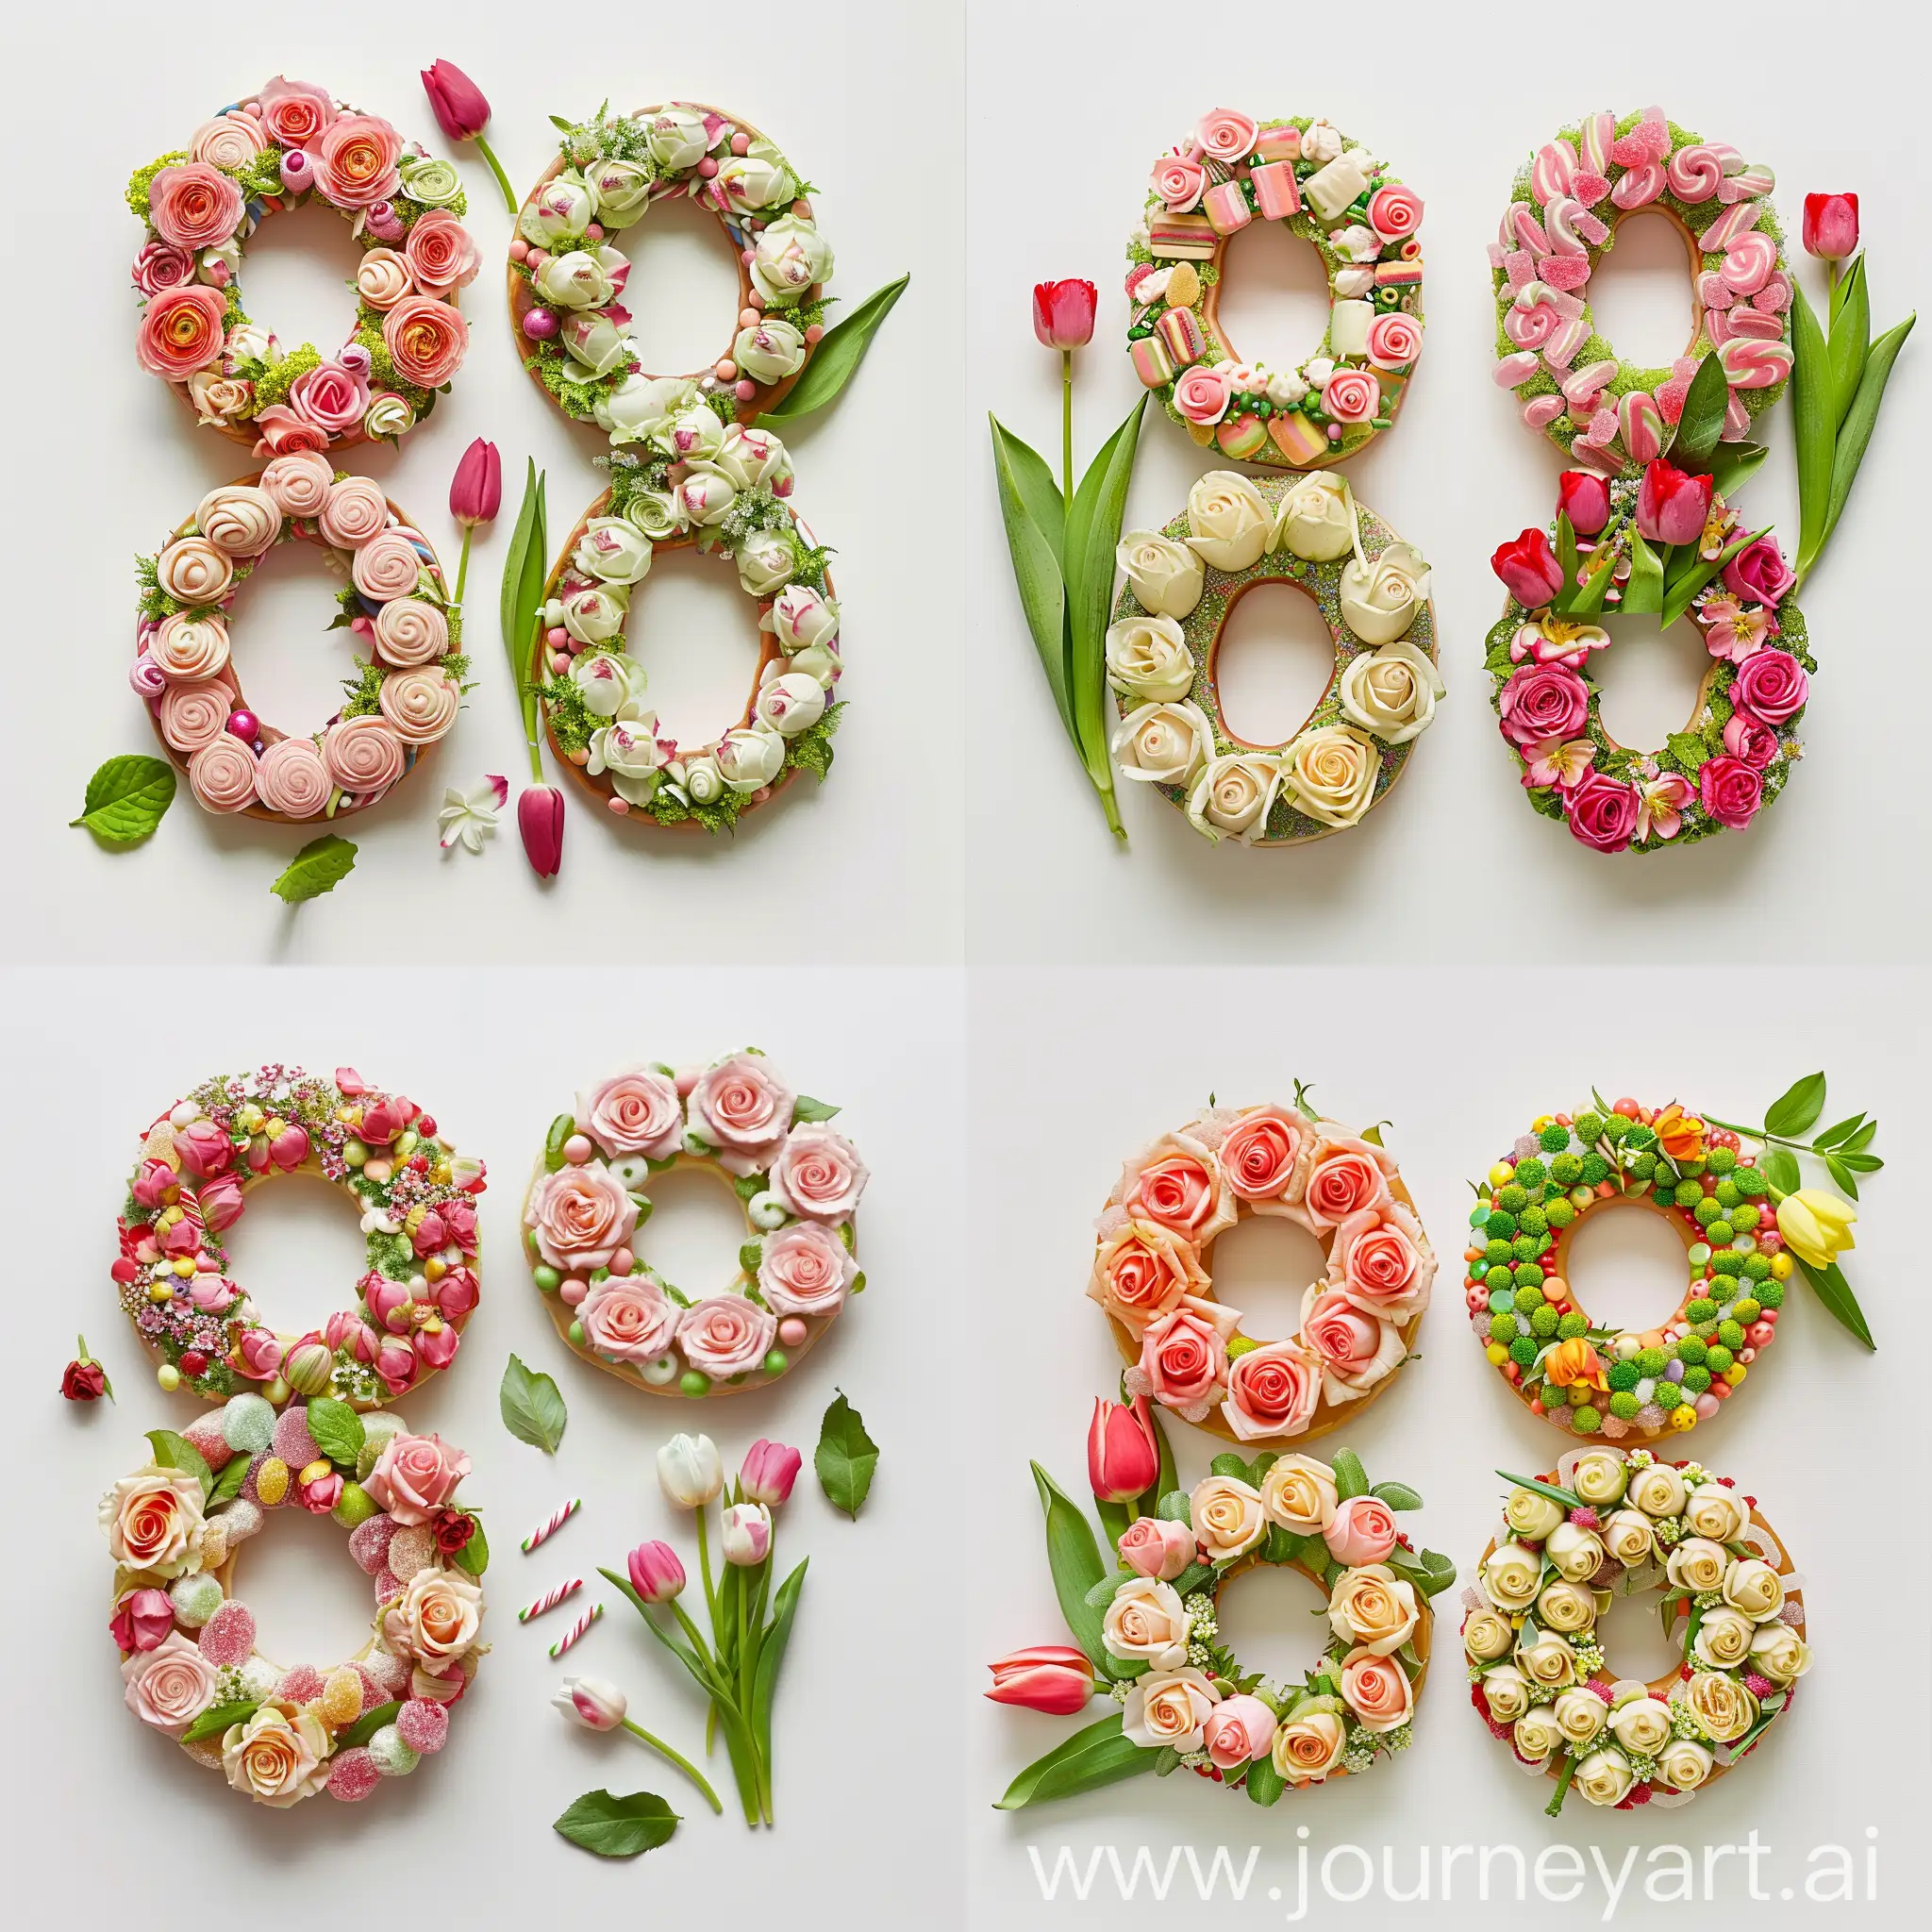 Два пончика лежат рядом, образуя цифру 8. Пончики сделаны из роз, тюльпанов и конфет, рядом лежат зелёные листья от цветов, белый фон